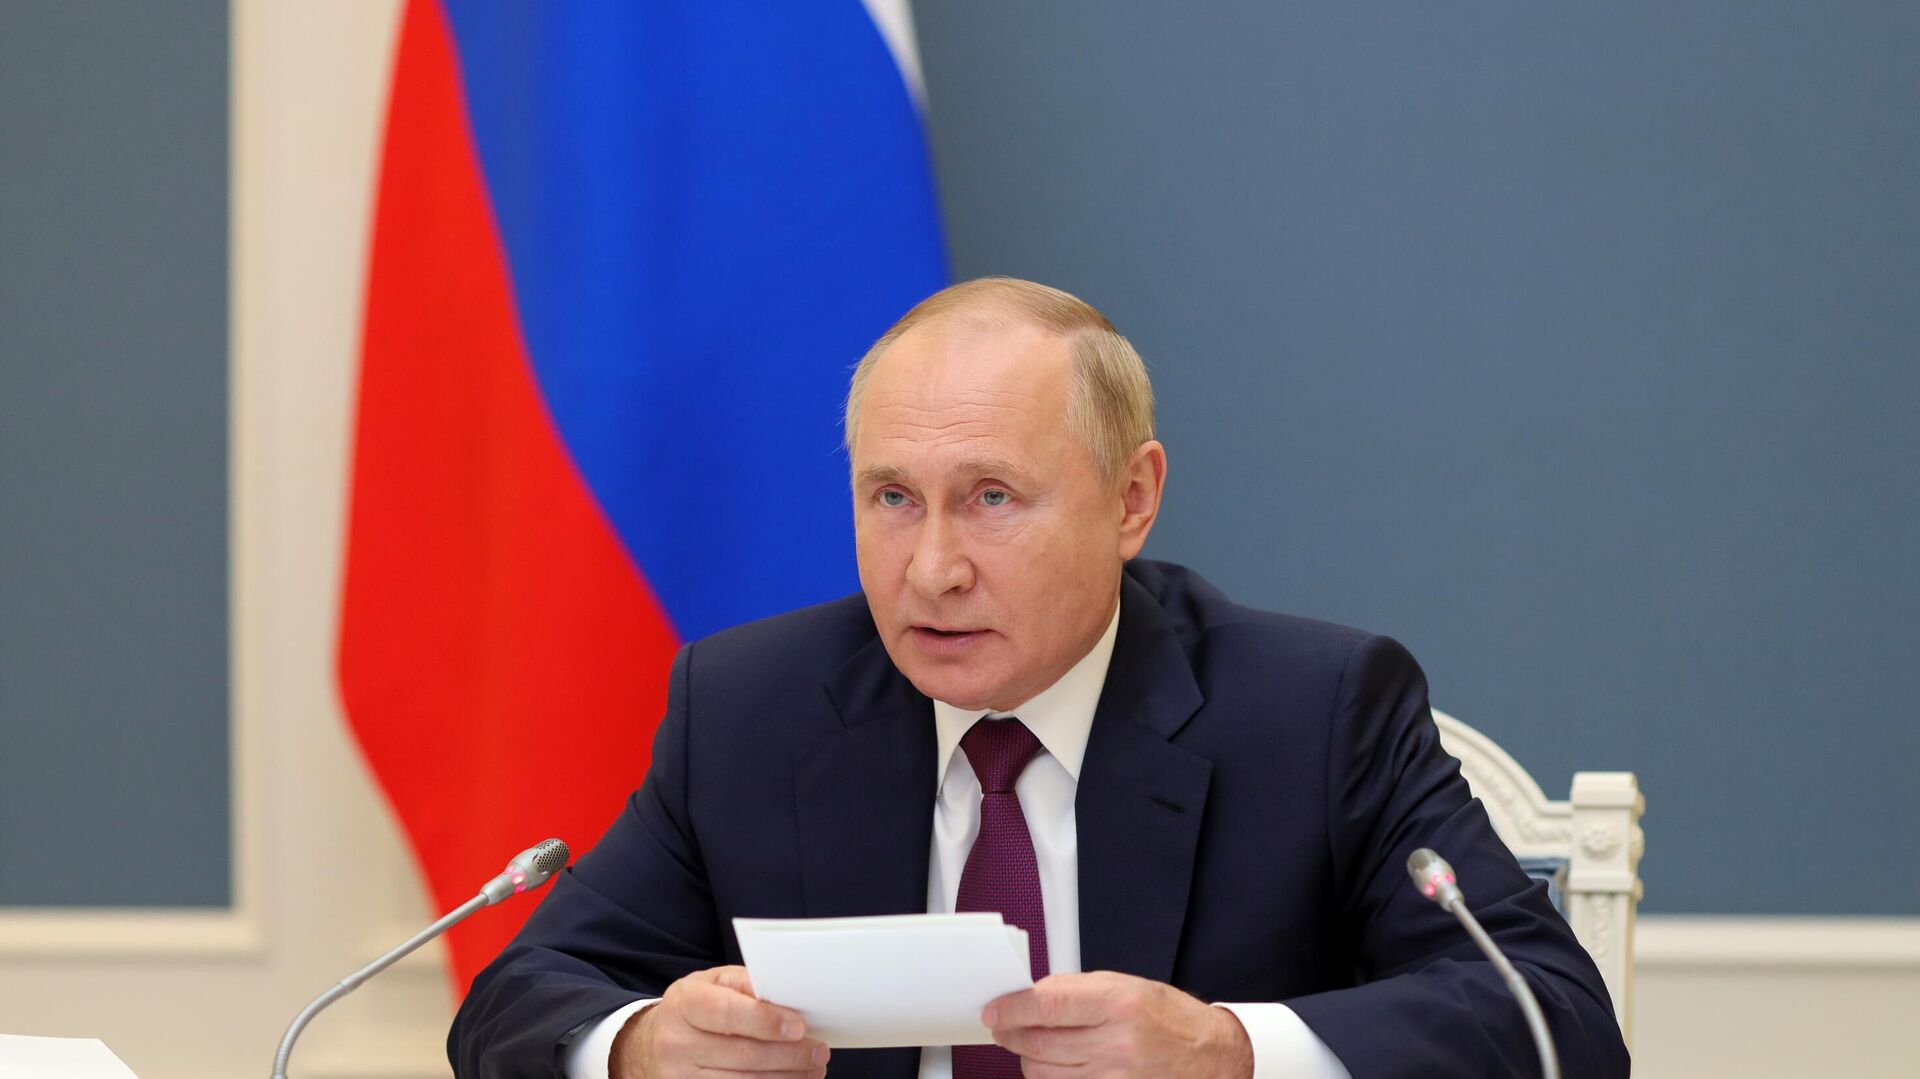 Президент РФ В. Путин принял участие в саммите Группы двадцати - Sputnik Узбекистан, 1920, 30.10.2021